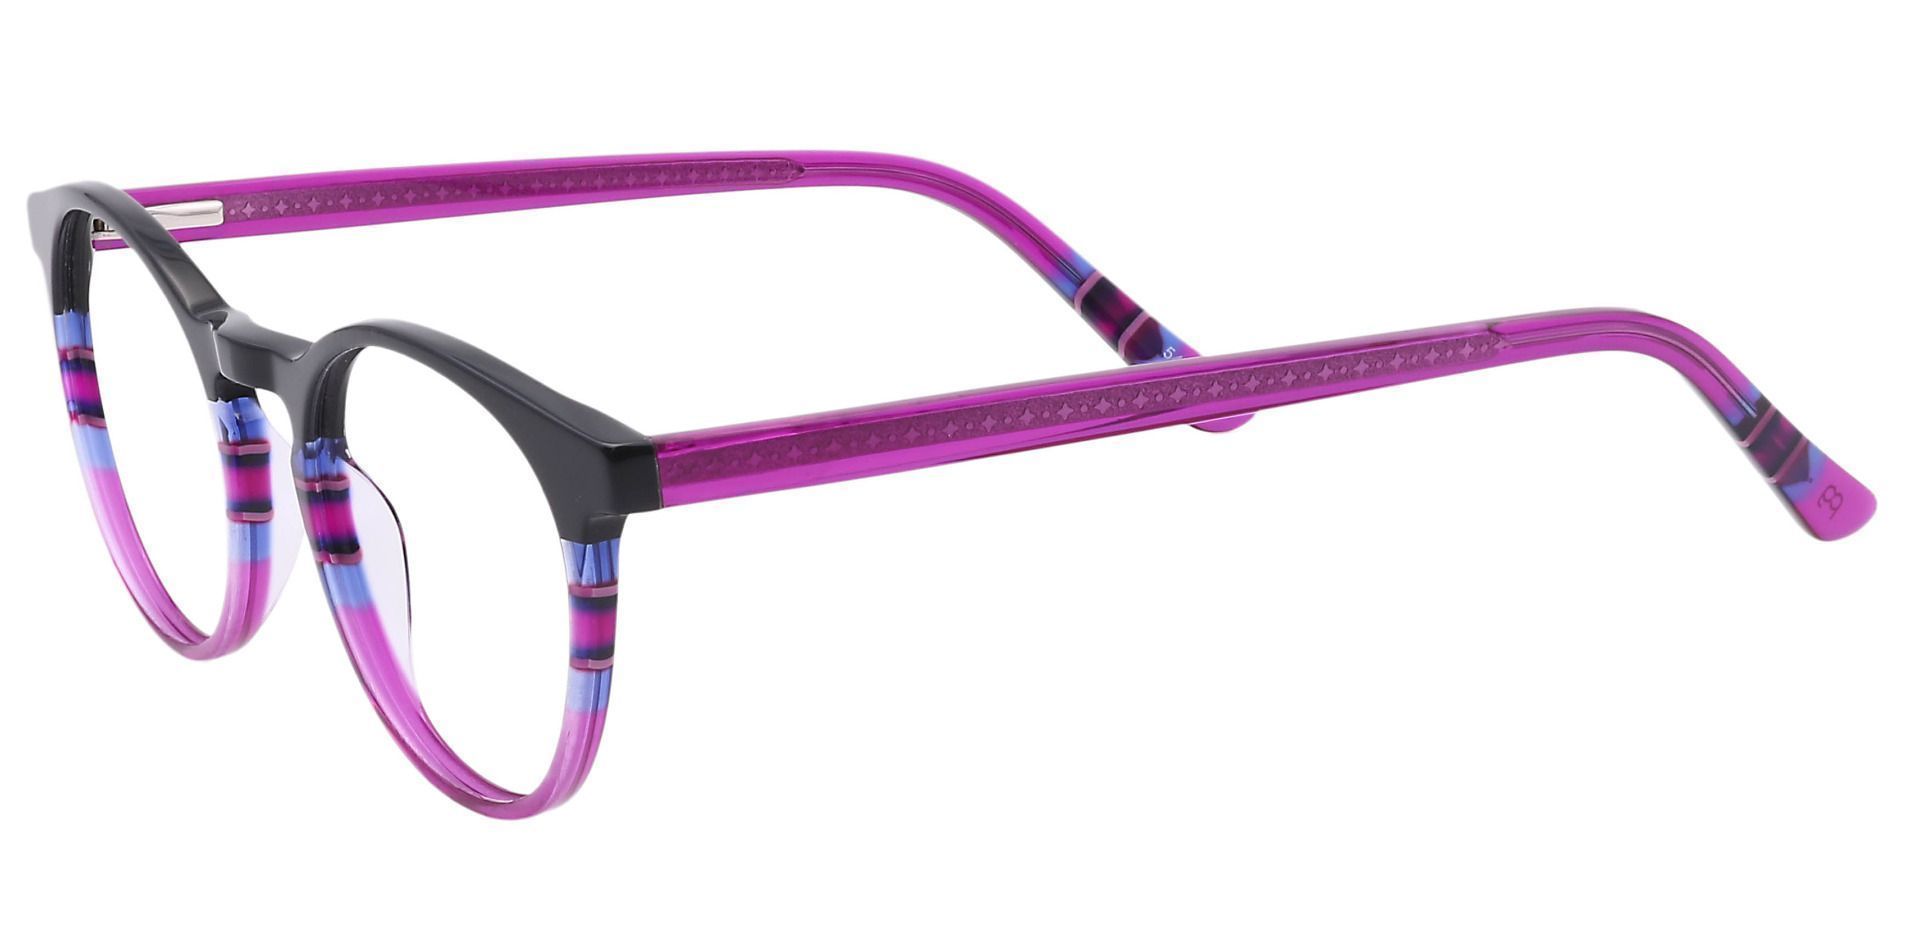 Jellie Round Prescription Glasses - Black/blue Fuschia Stripe  Purple